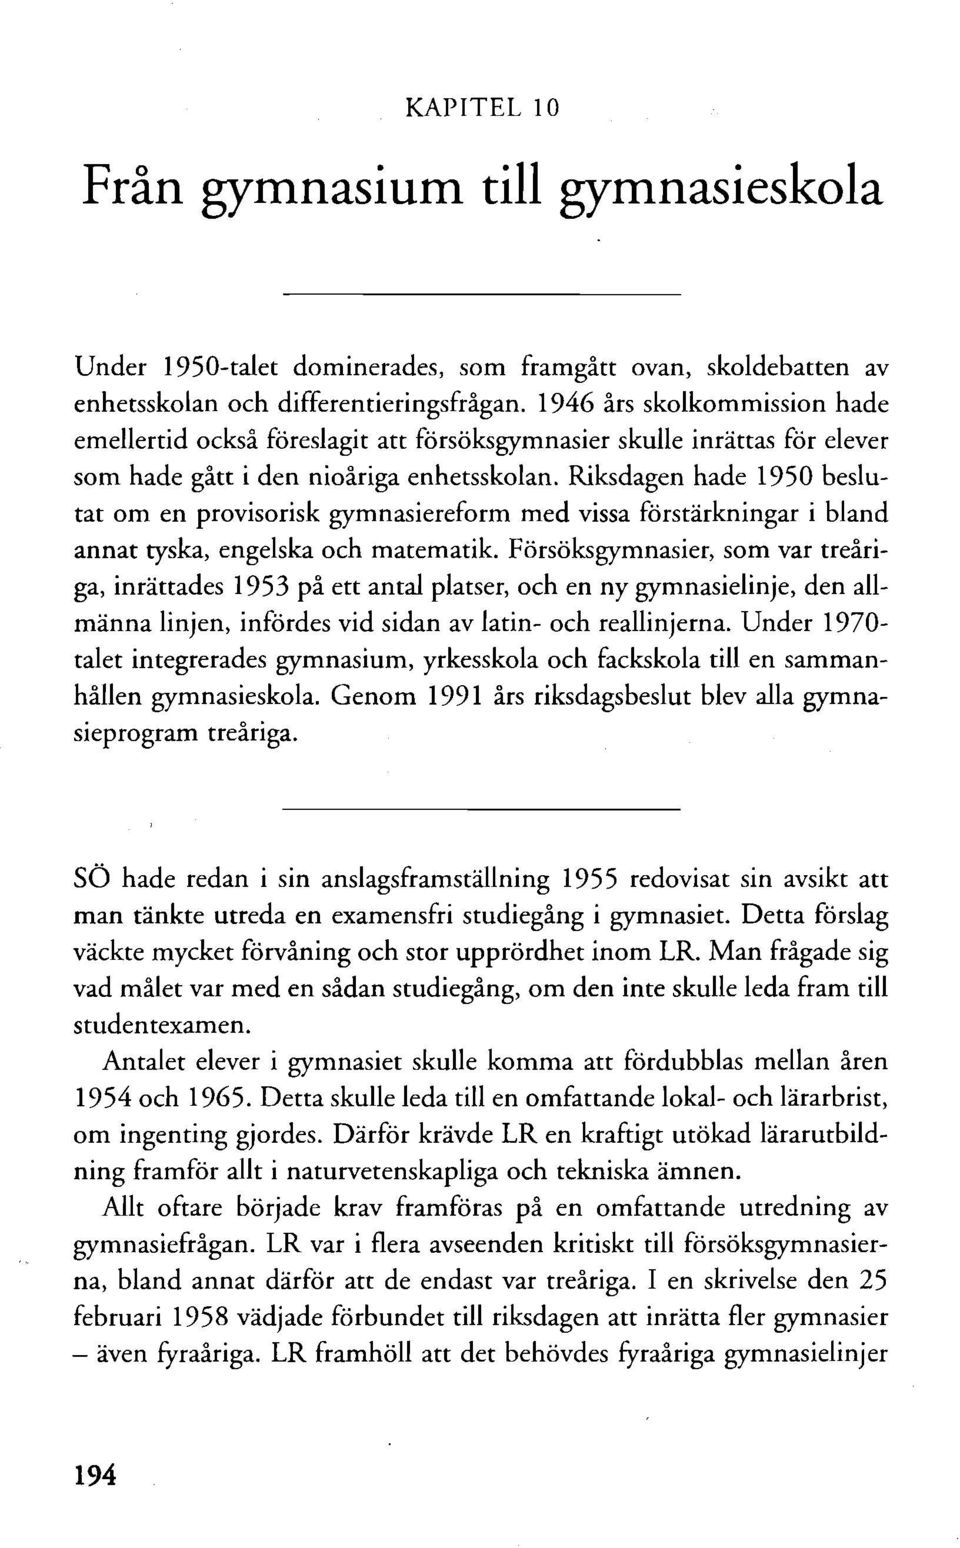 Riksdagen hade 1950 beslutat om en provisorisk gymnasiereform med vissa förstärkningar i bland annat tyska, engelska och matematik.